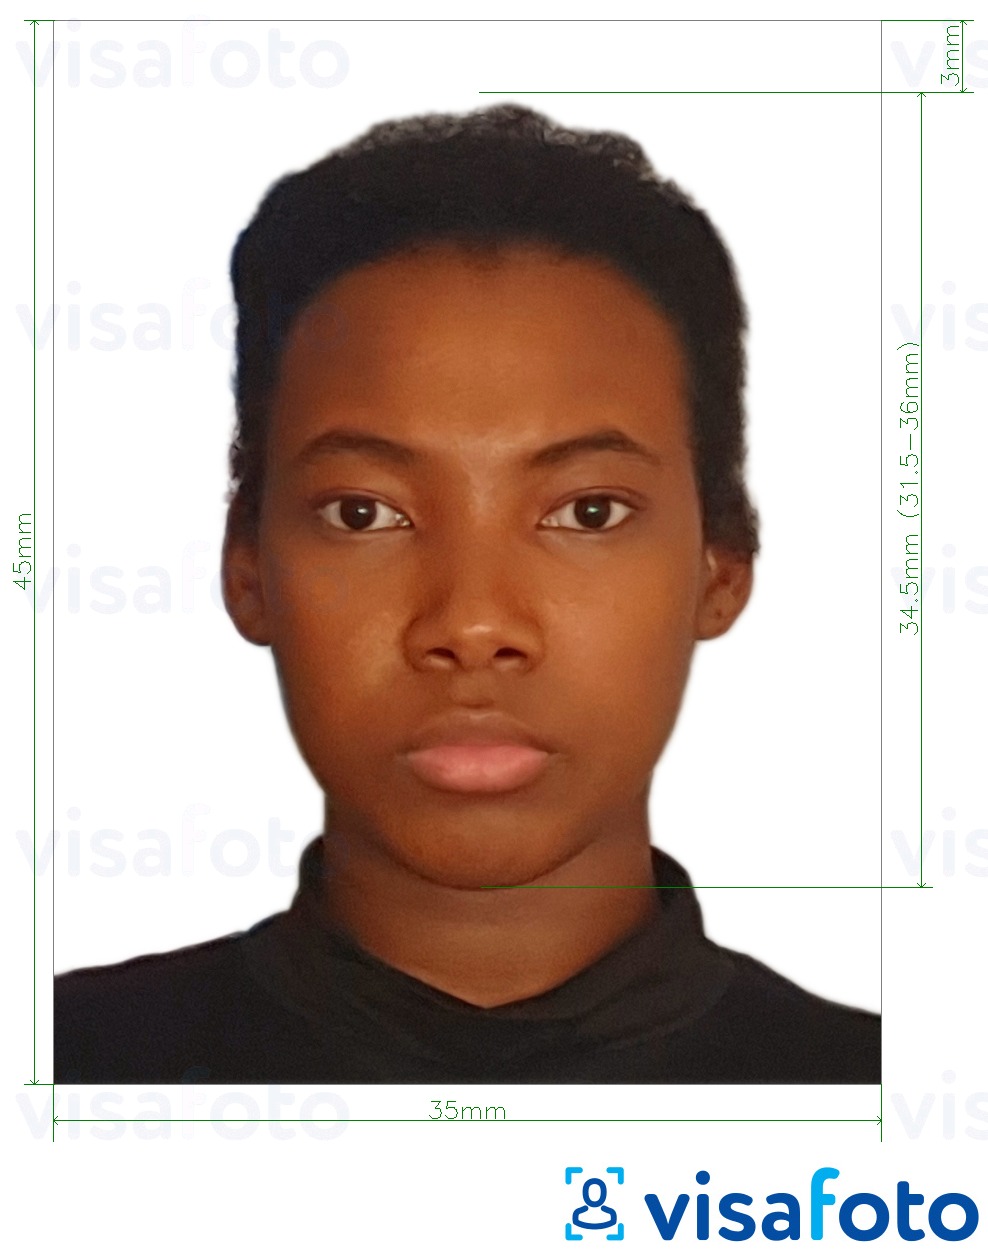 Contoh dari foto untuk Burkina Faso visa 4.5x3.5 cm (45x35 mm) dengan ukuran spesifikasi yang tepat